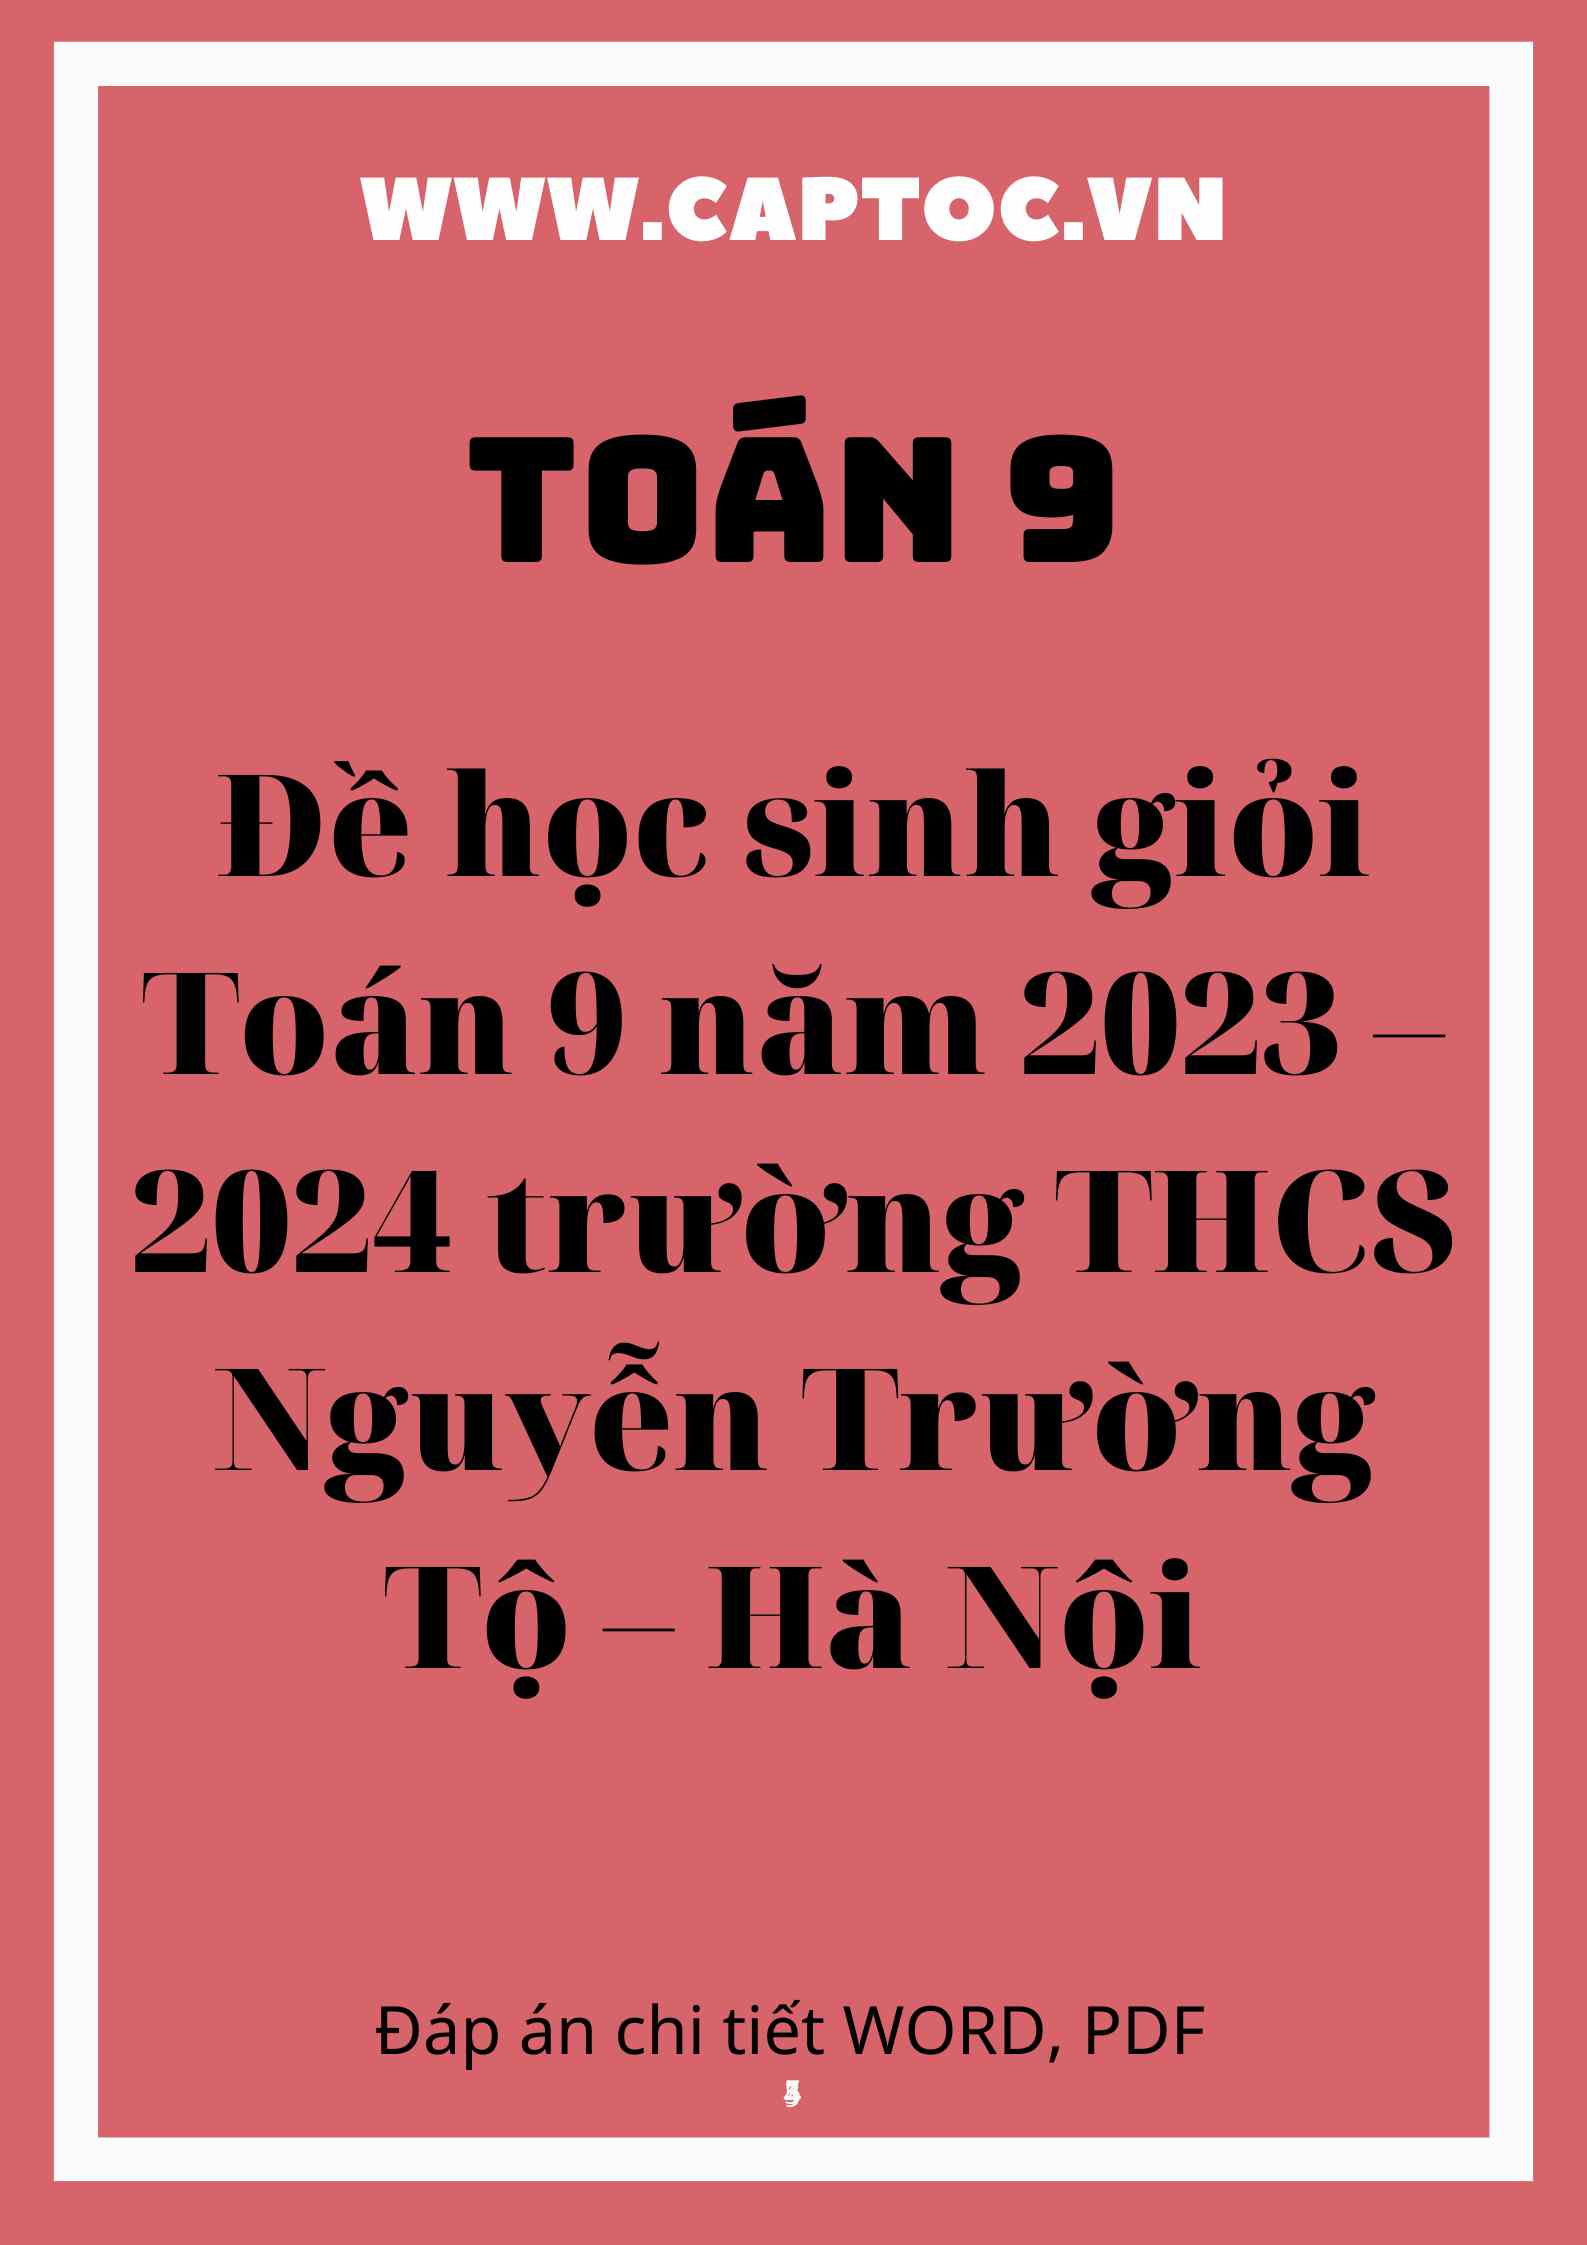 Đề học sinh giỏi Toán 9 năm 2023 – 2024 trường THCS Nguyễn Trường Tộ – Hà Nội